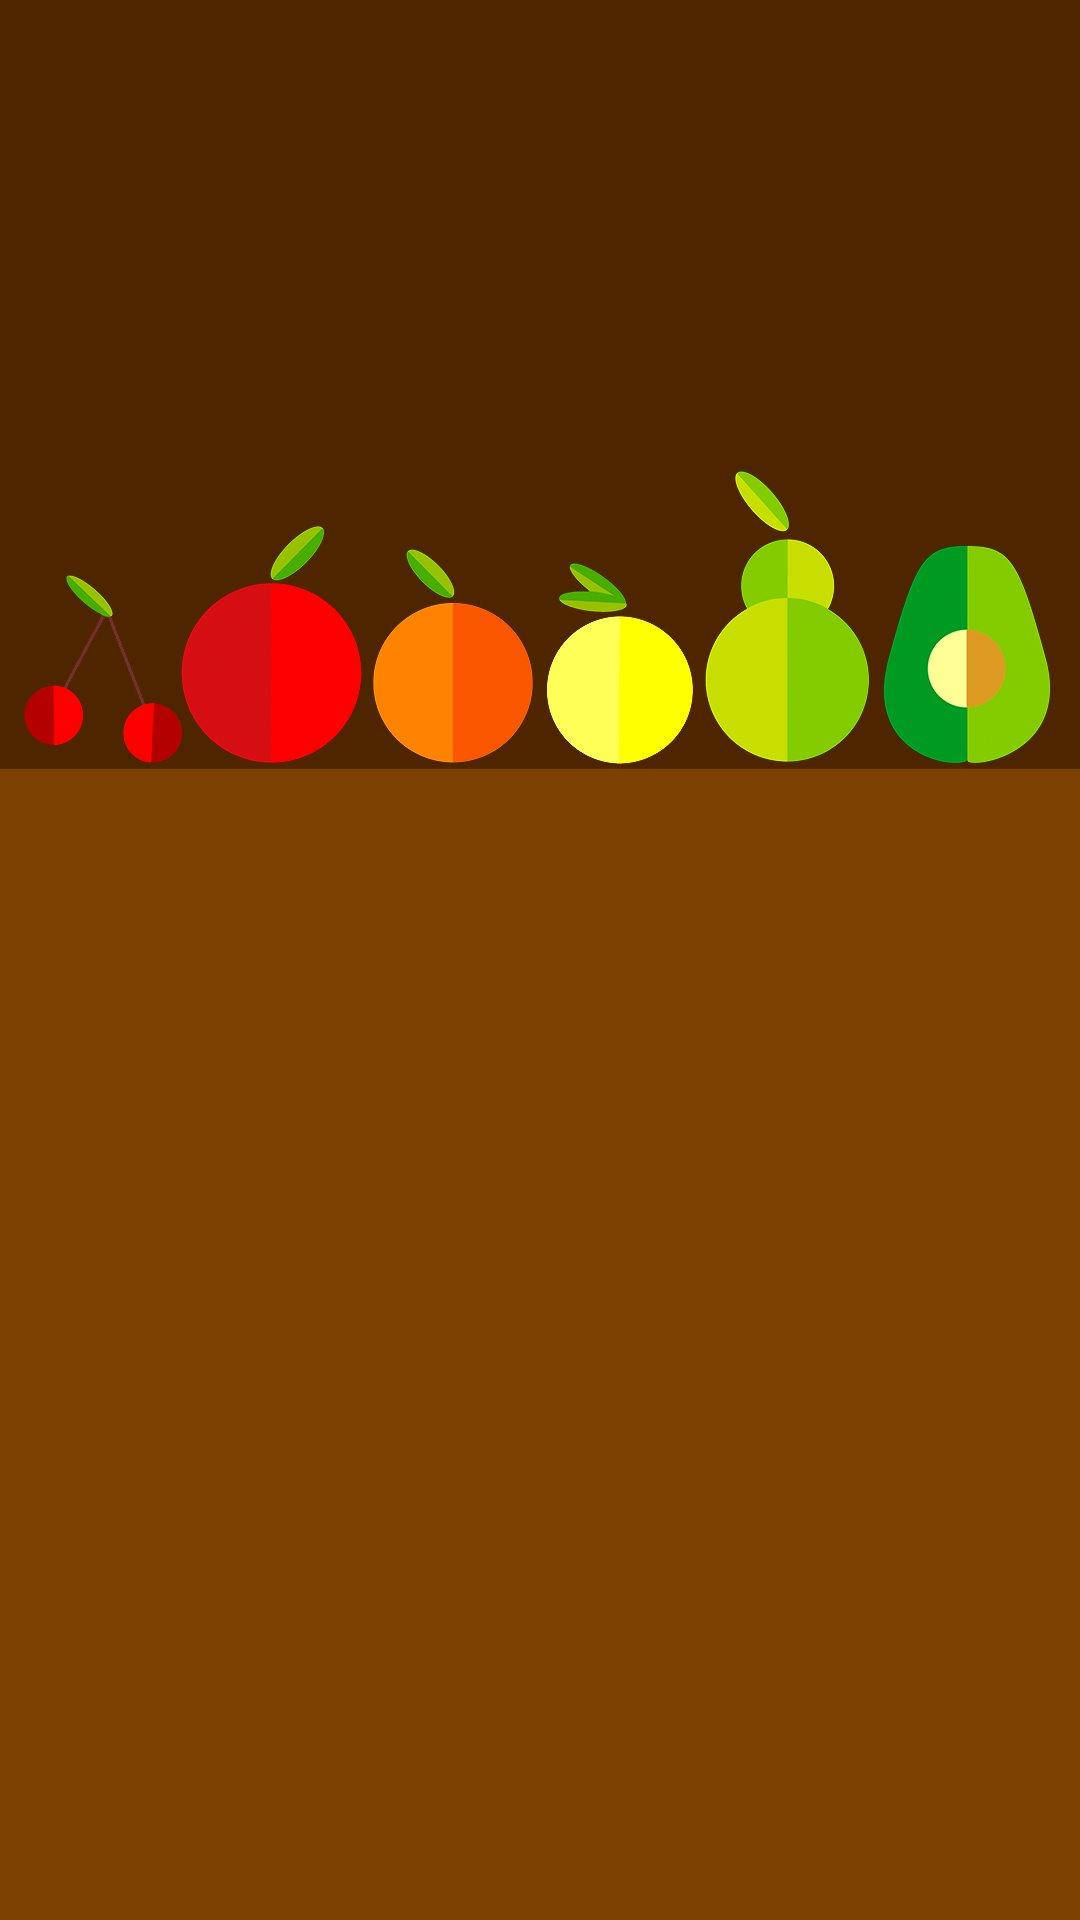 Fruits Minimalist Iphone Background